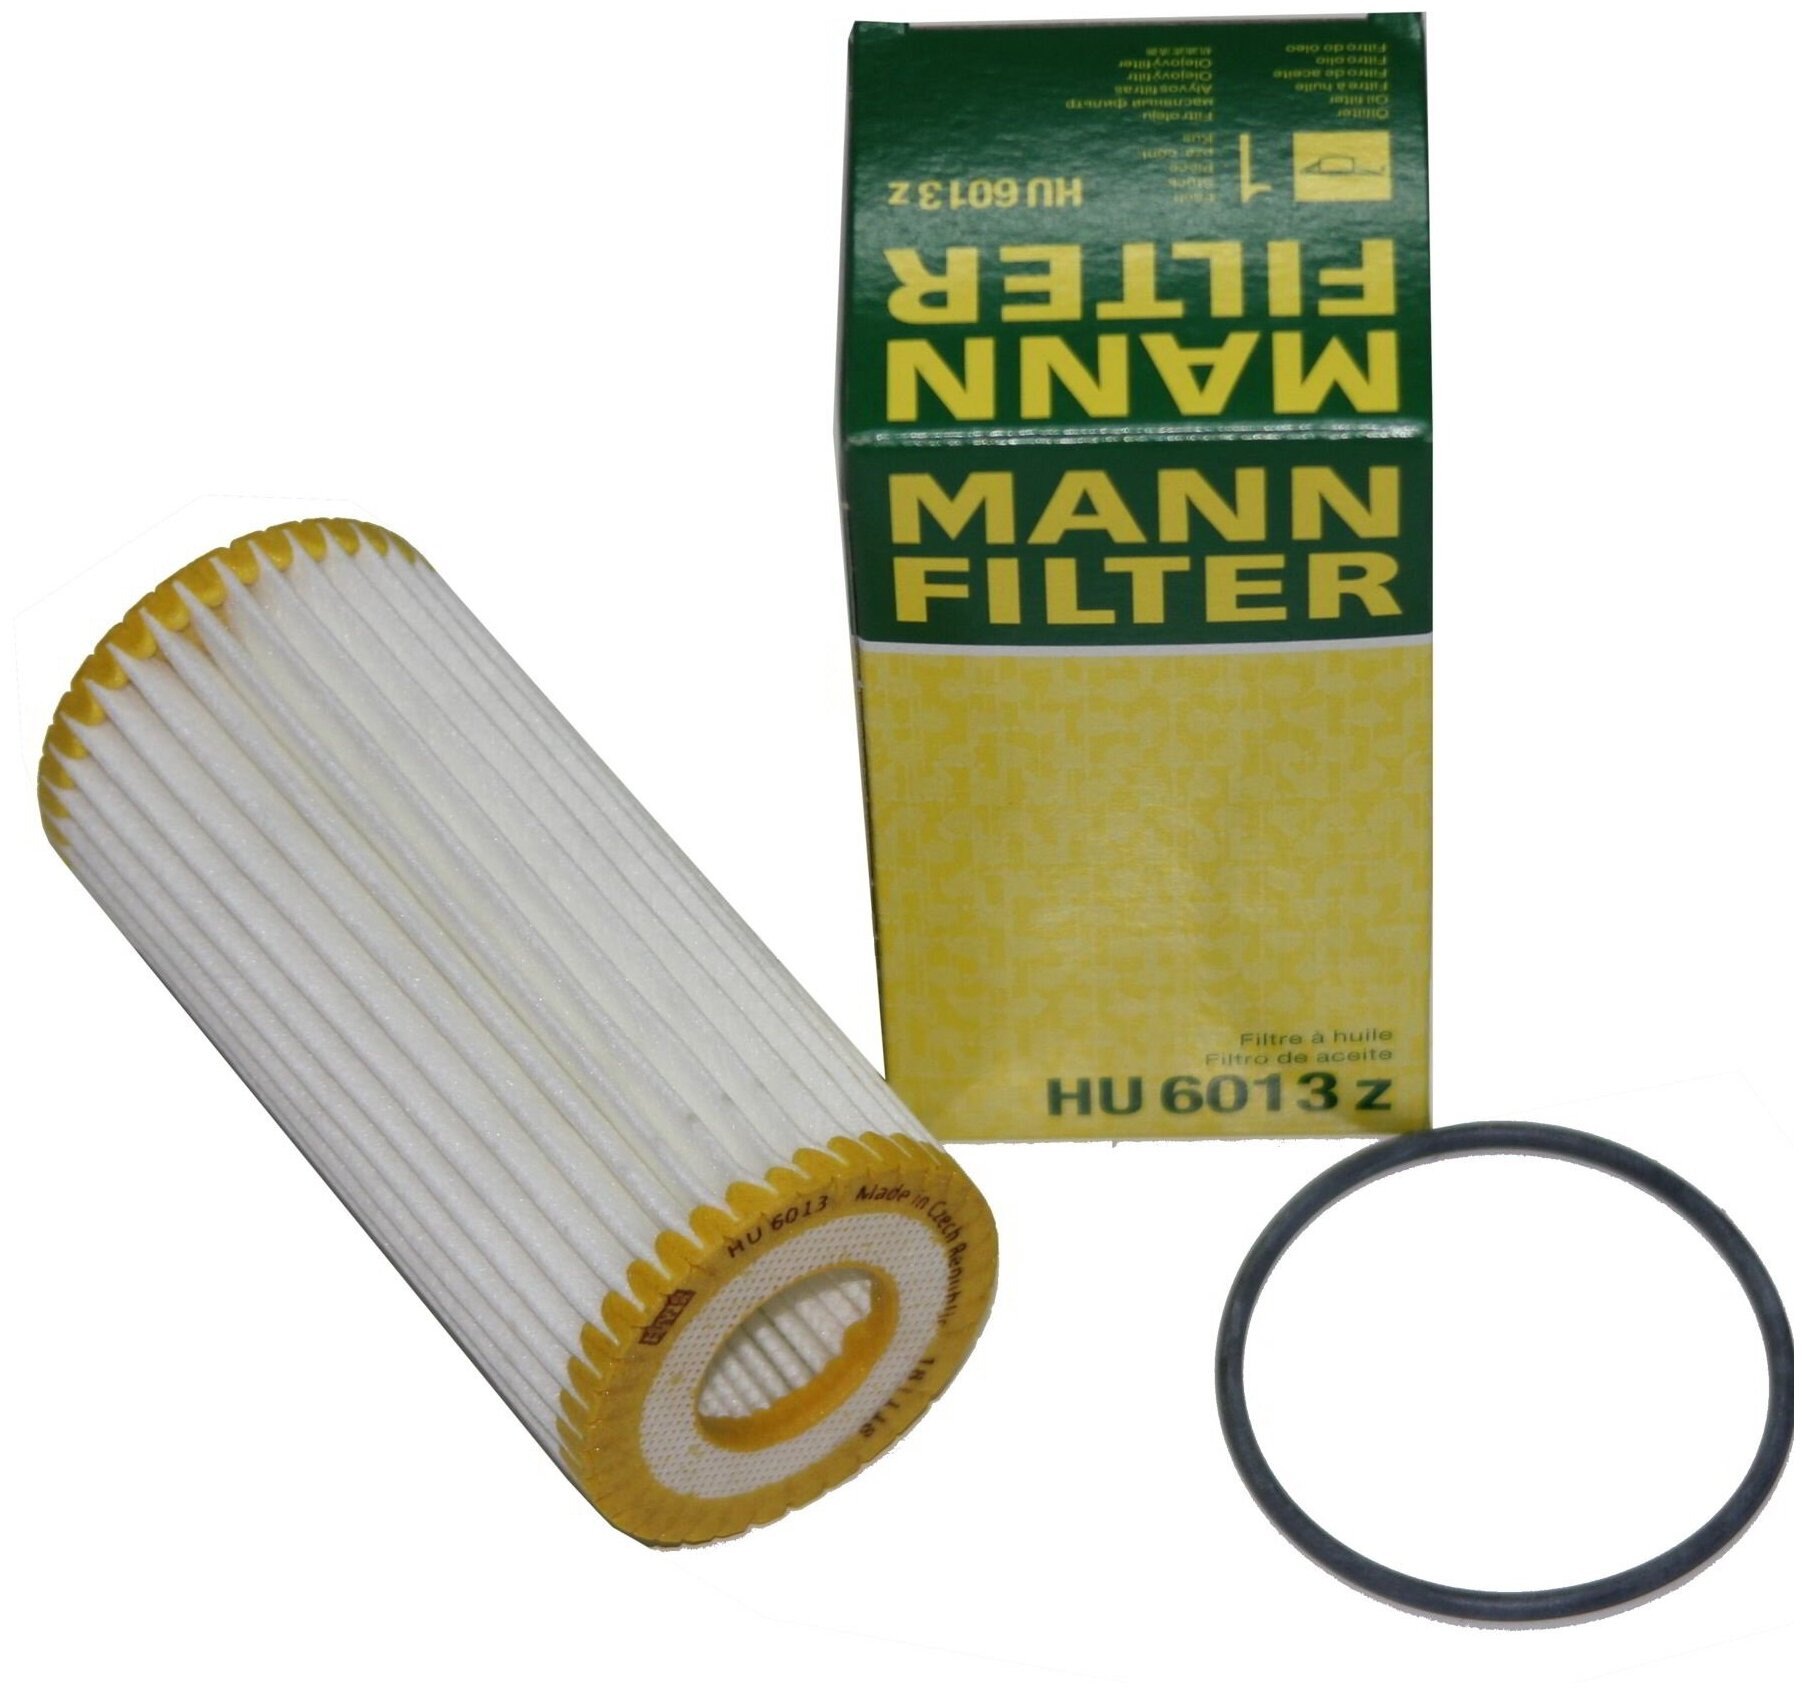 Масляный фильтр Mann-Filter - фото №2